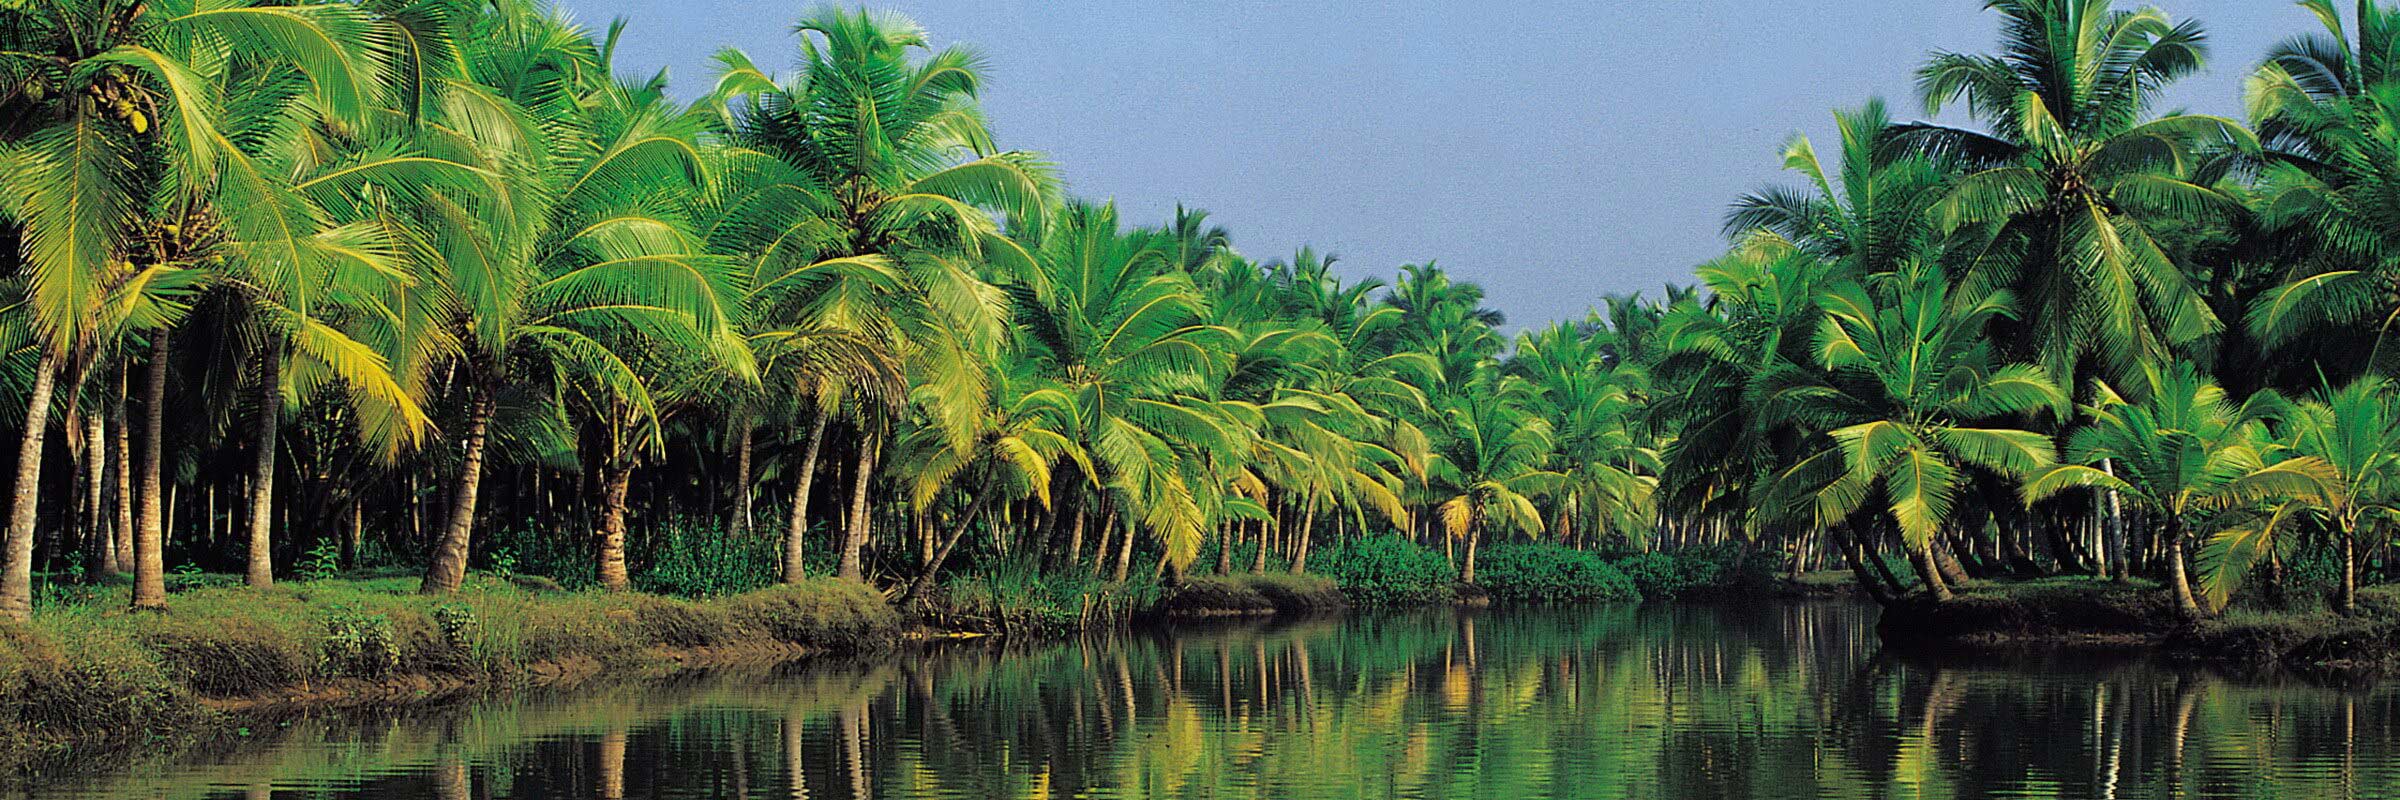 Die Backwaters sind ein verzweigtes Wasserstraßennetz im südindischen Bundesstaat Kerala, dass sich auf einer Fläche von 1900 km² von Kochi bis Kollam erstreckt.